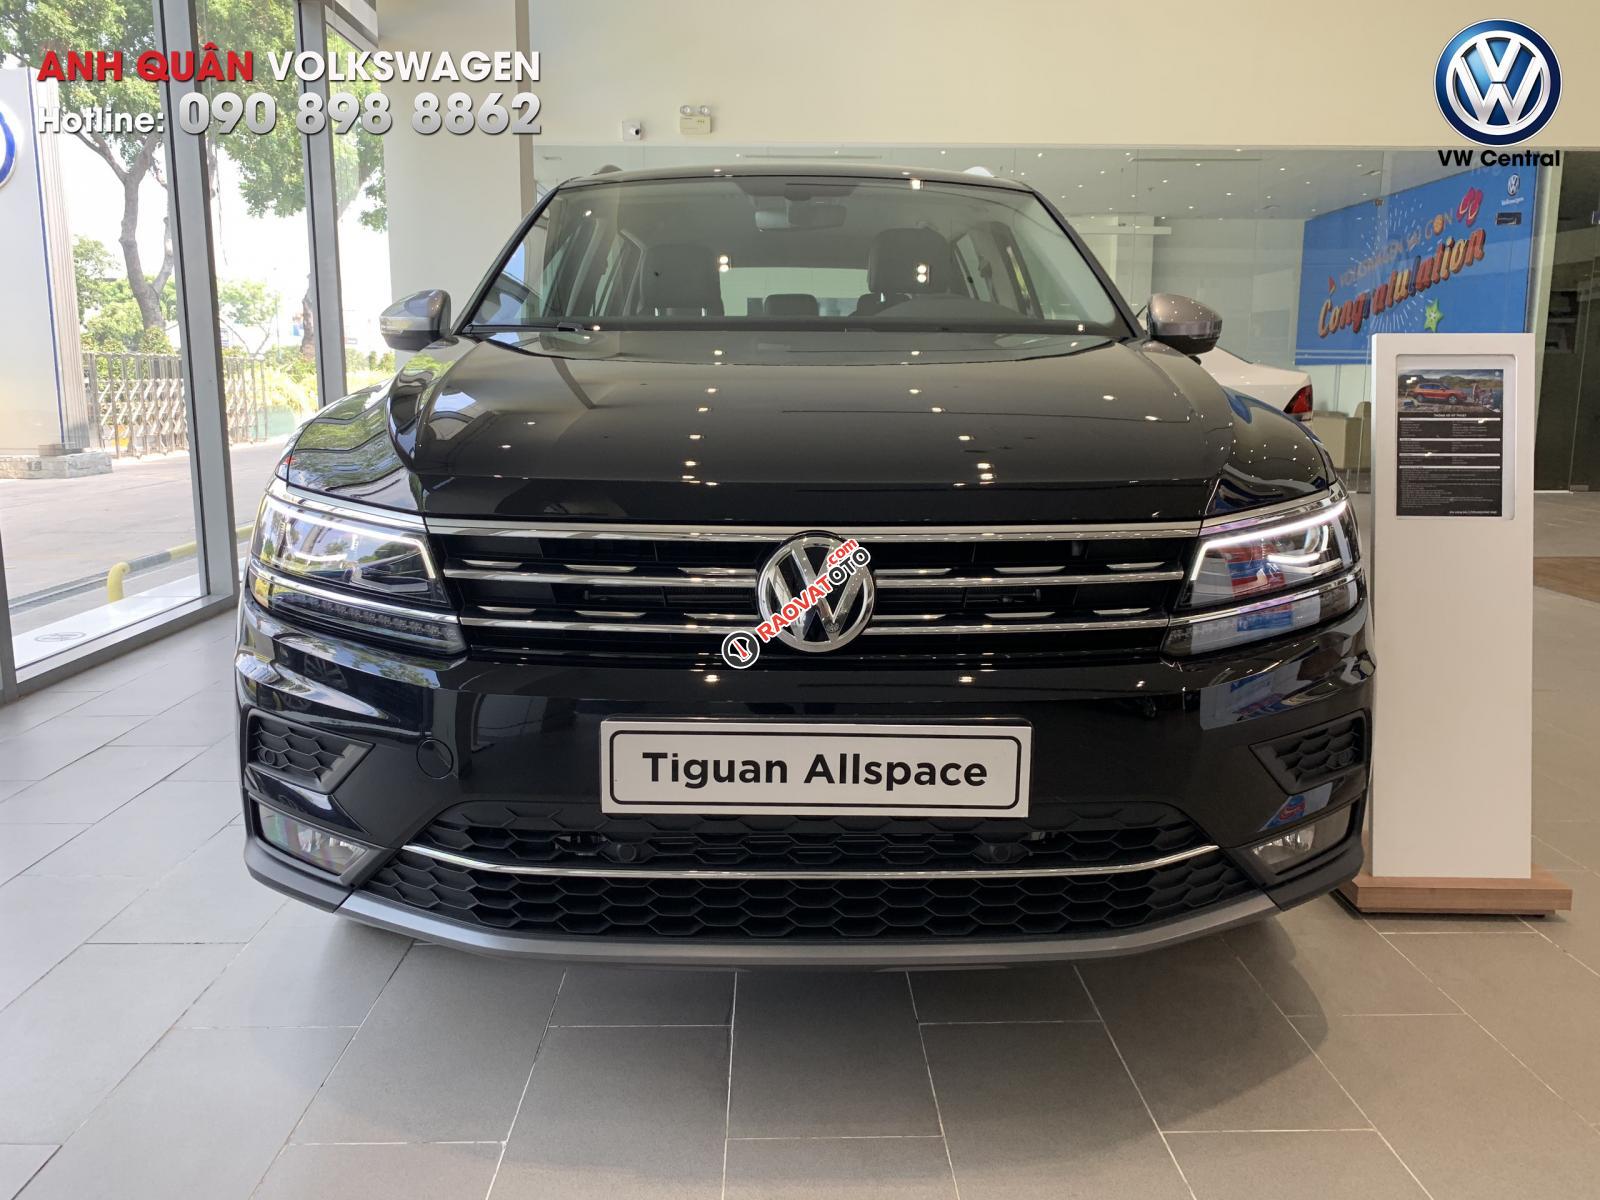 Tiguan Allspace 2019 - ưu đãi mua xe lên tới 160tr, trả góp 80%, hotline: 090-898-8862-17